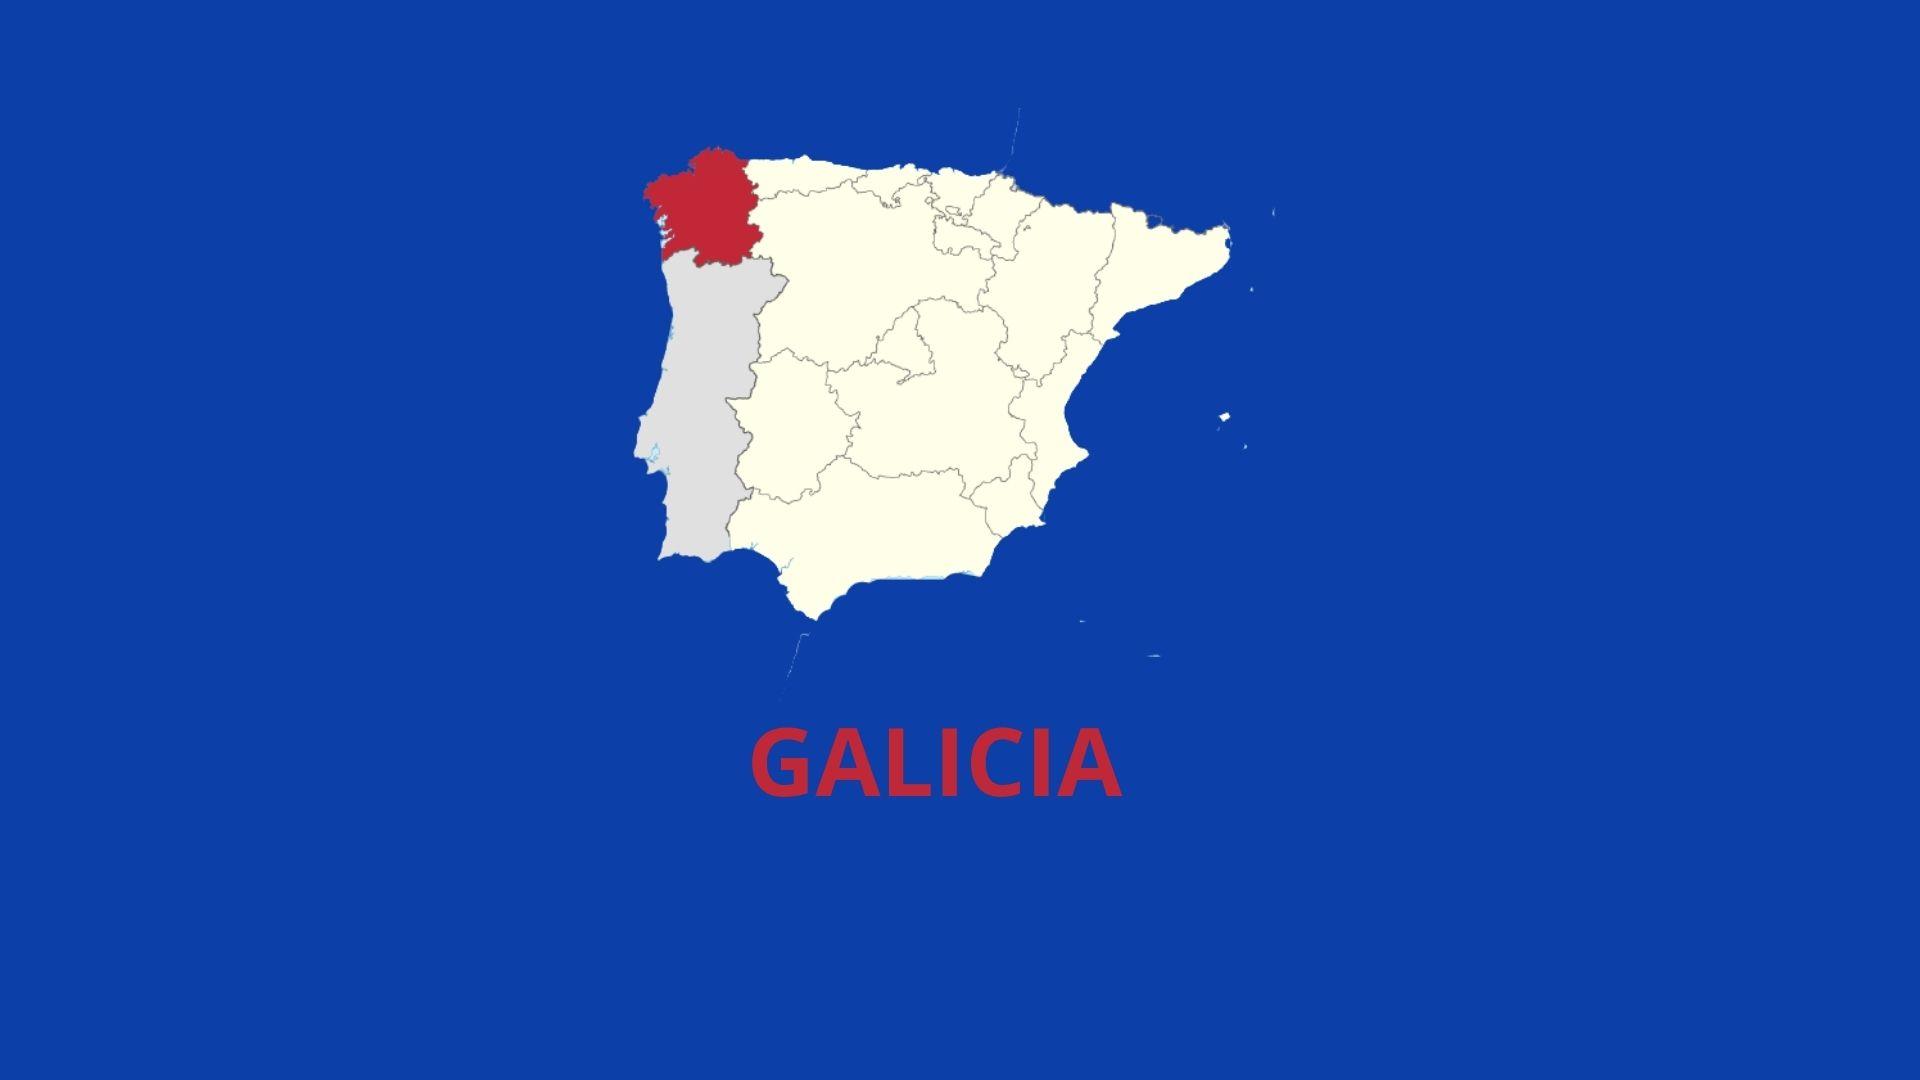 Galica